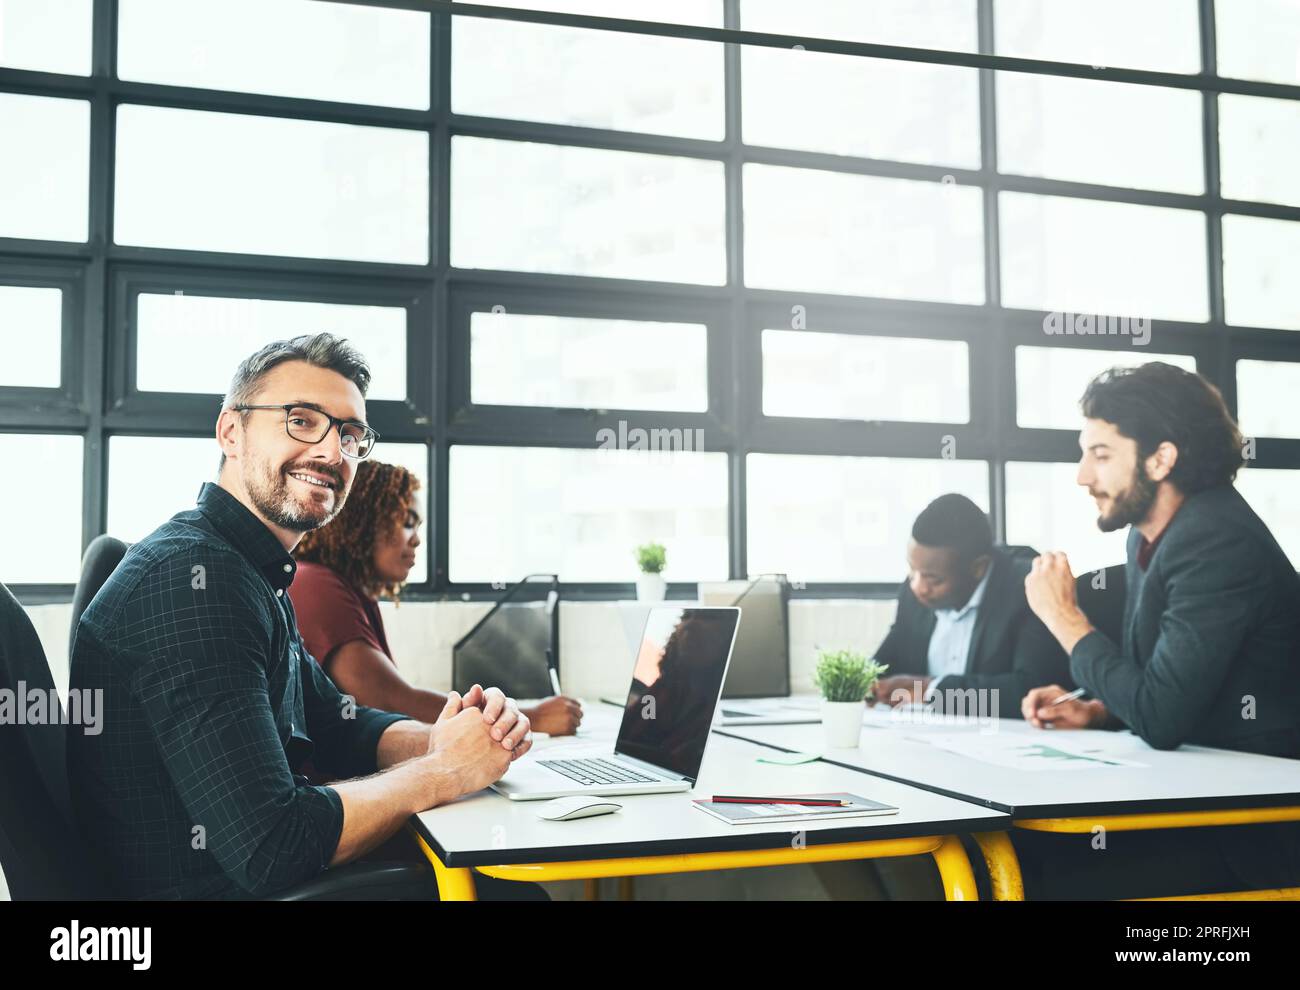 Innovation ist das, was wir anstreben. Beschnittenes Porträt eines reifen Geschäftsmannes, der mit seinen Kollegen im Büro an einem Schreibtisch arbeitet. Stockfoto